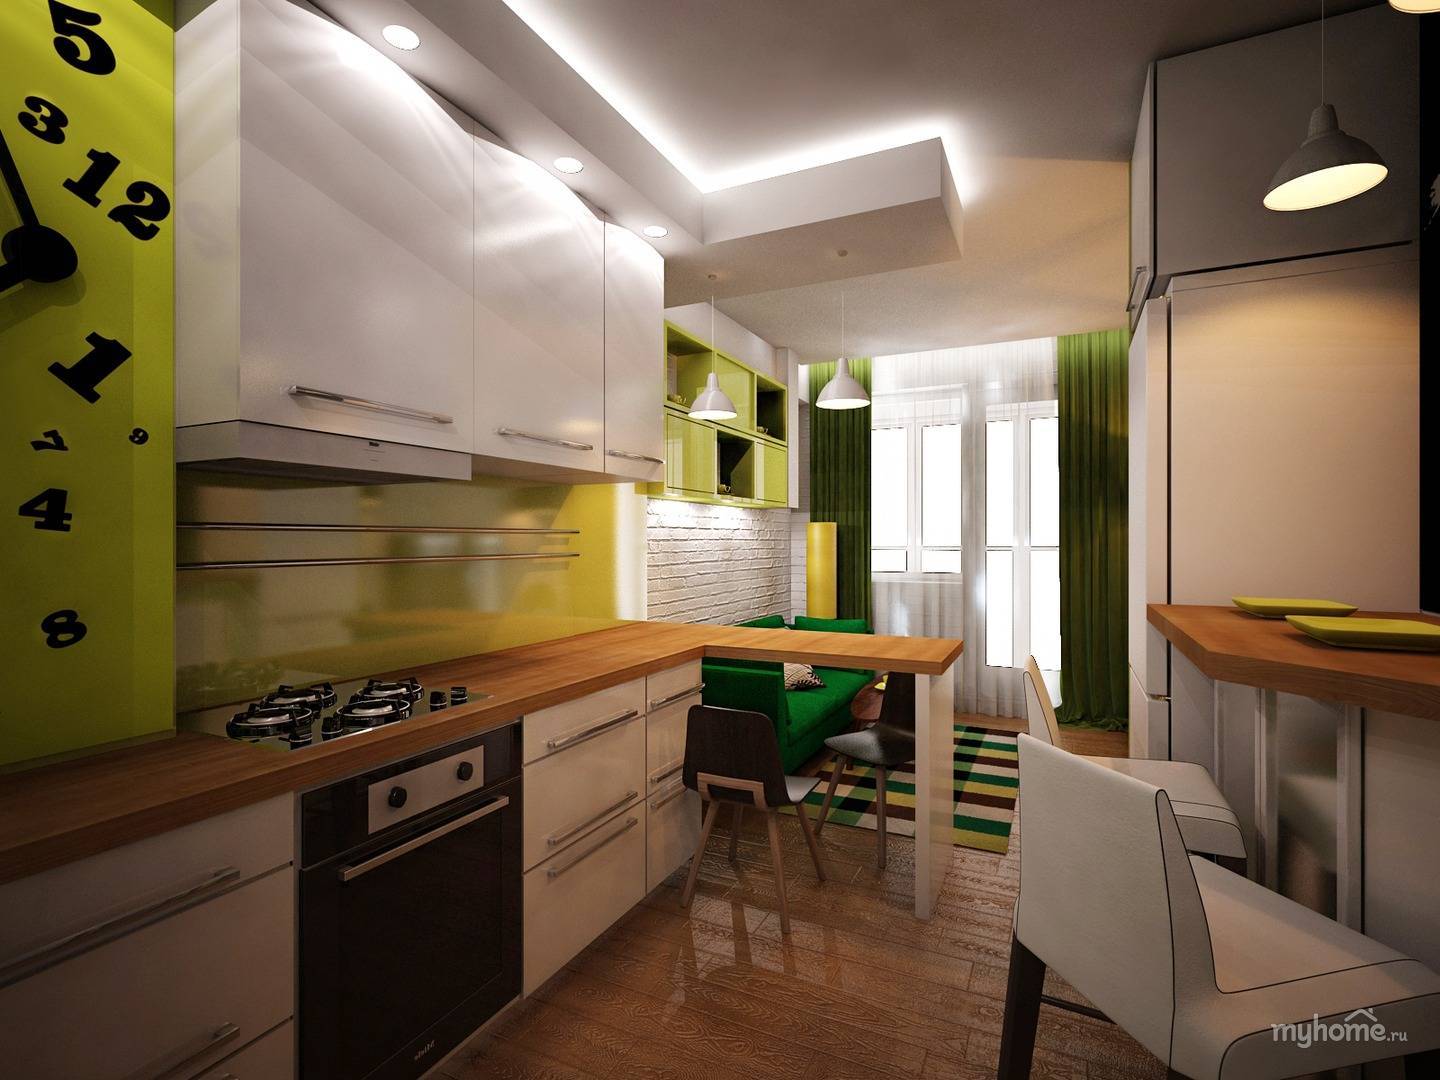 Дизайн кухни 16 кв м: планировка, идеи, фото 2020